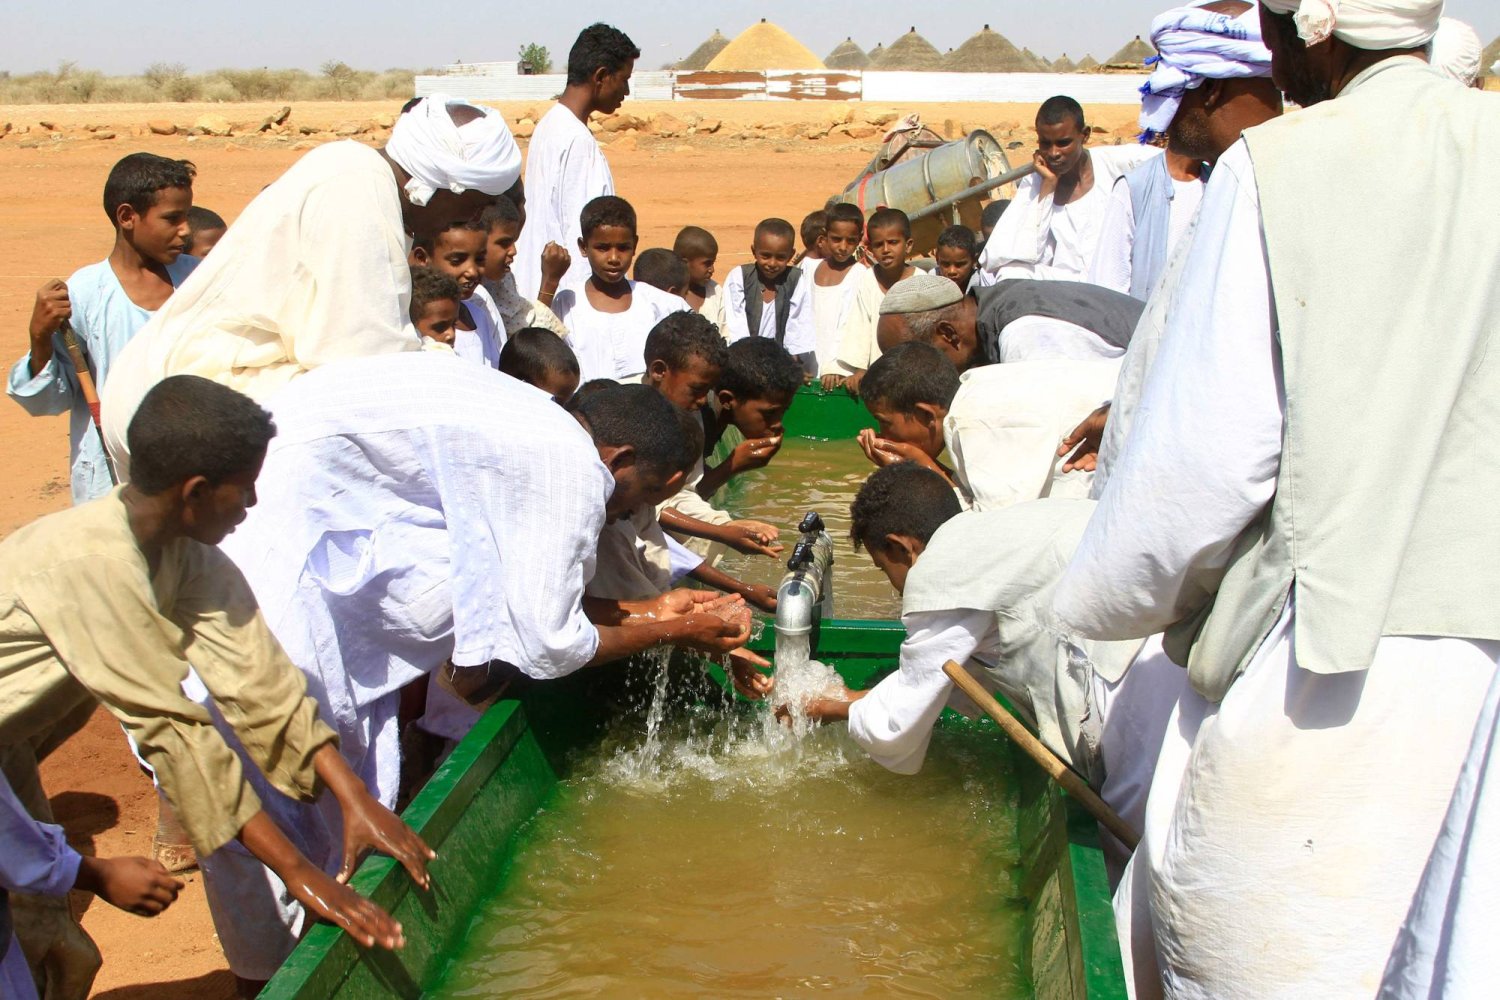 سودانيون يشربون من مياه استخرجت من بئر جوفية في ولاية القضارف شرق السودان (أ.ف.ب)